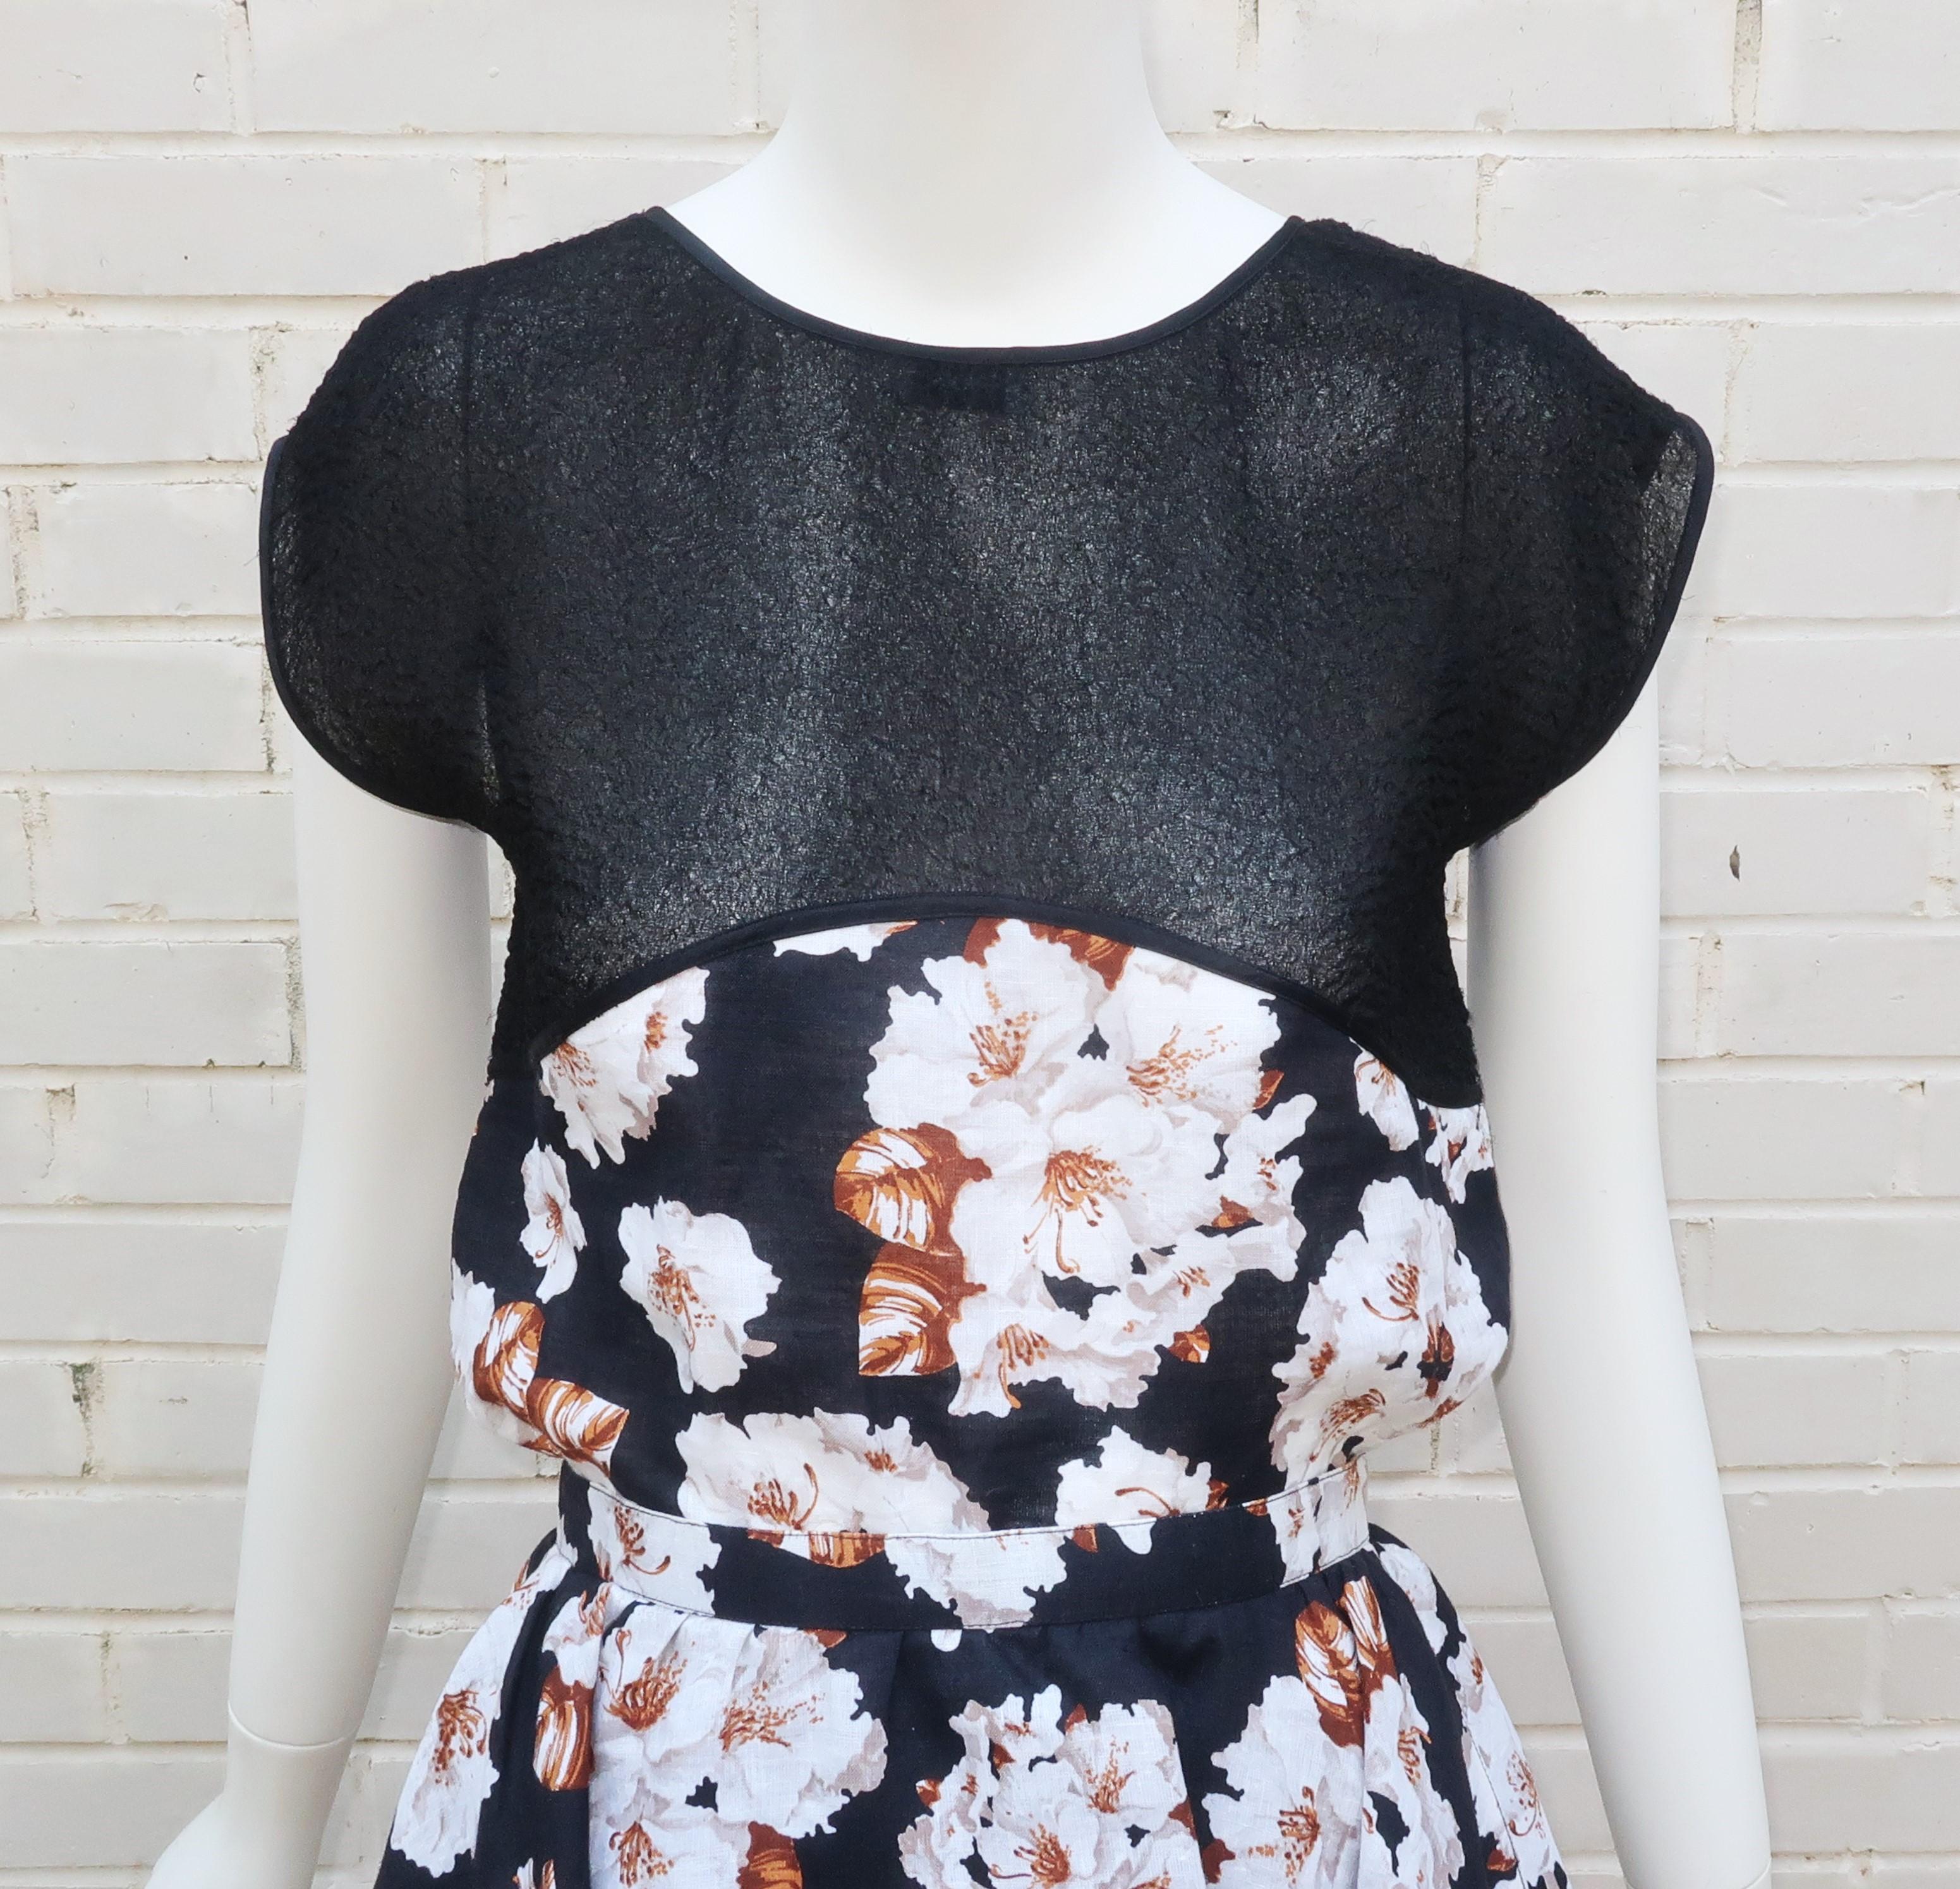 Cette robe deux pièces Geoffrey Beene des années 1970 est un véritable bijou.  Les deux pièces sont une combinaison d'un tissu transparent noir froncé unique et d'un lin floral représentant des fleurs blanches avec des accents bruns.  Le haut boxy